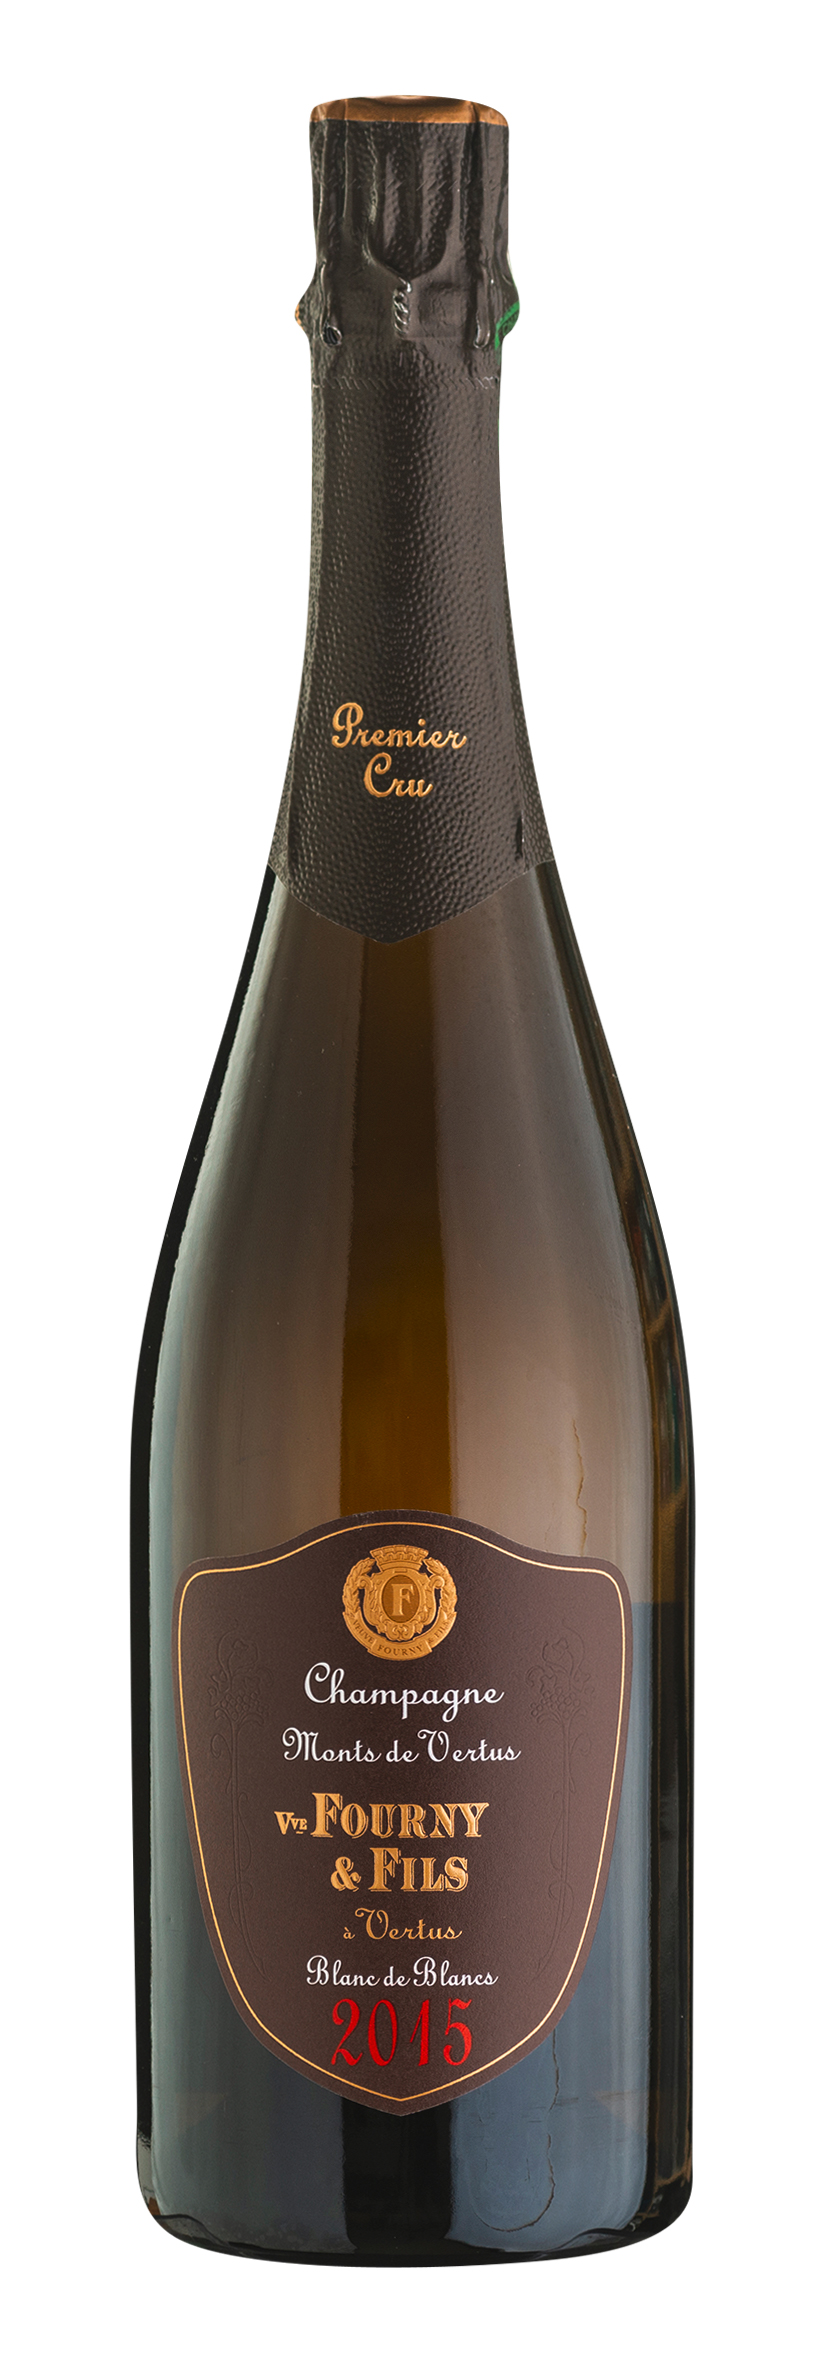 Champagne AOC Premier Cru Monts de Vertus Extra Brut 2016